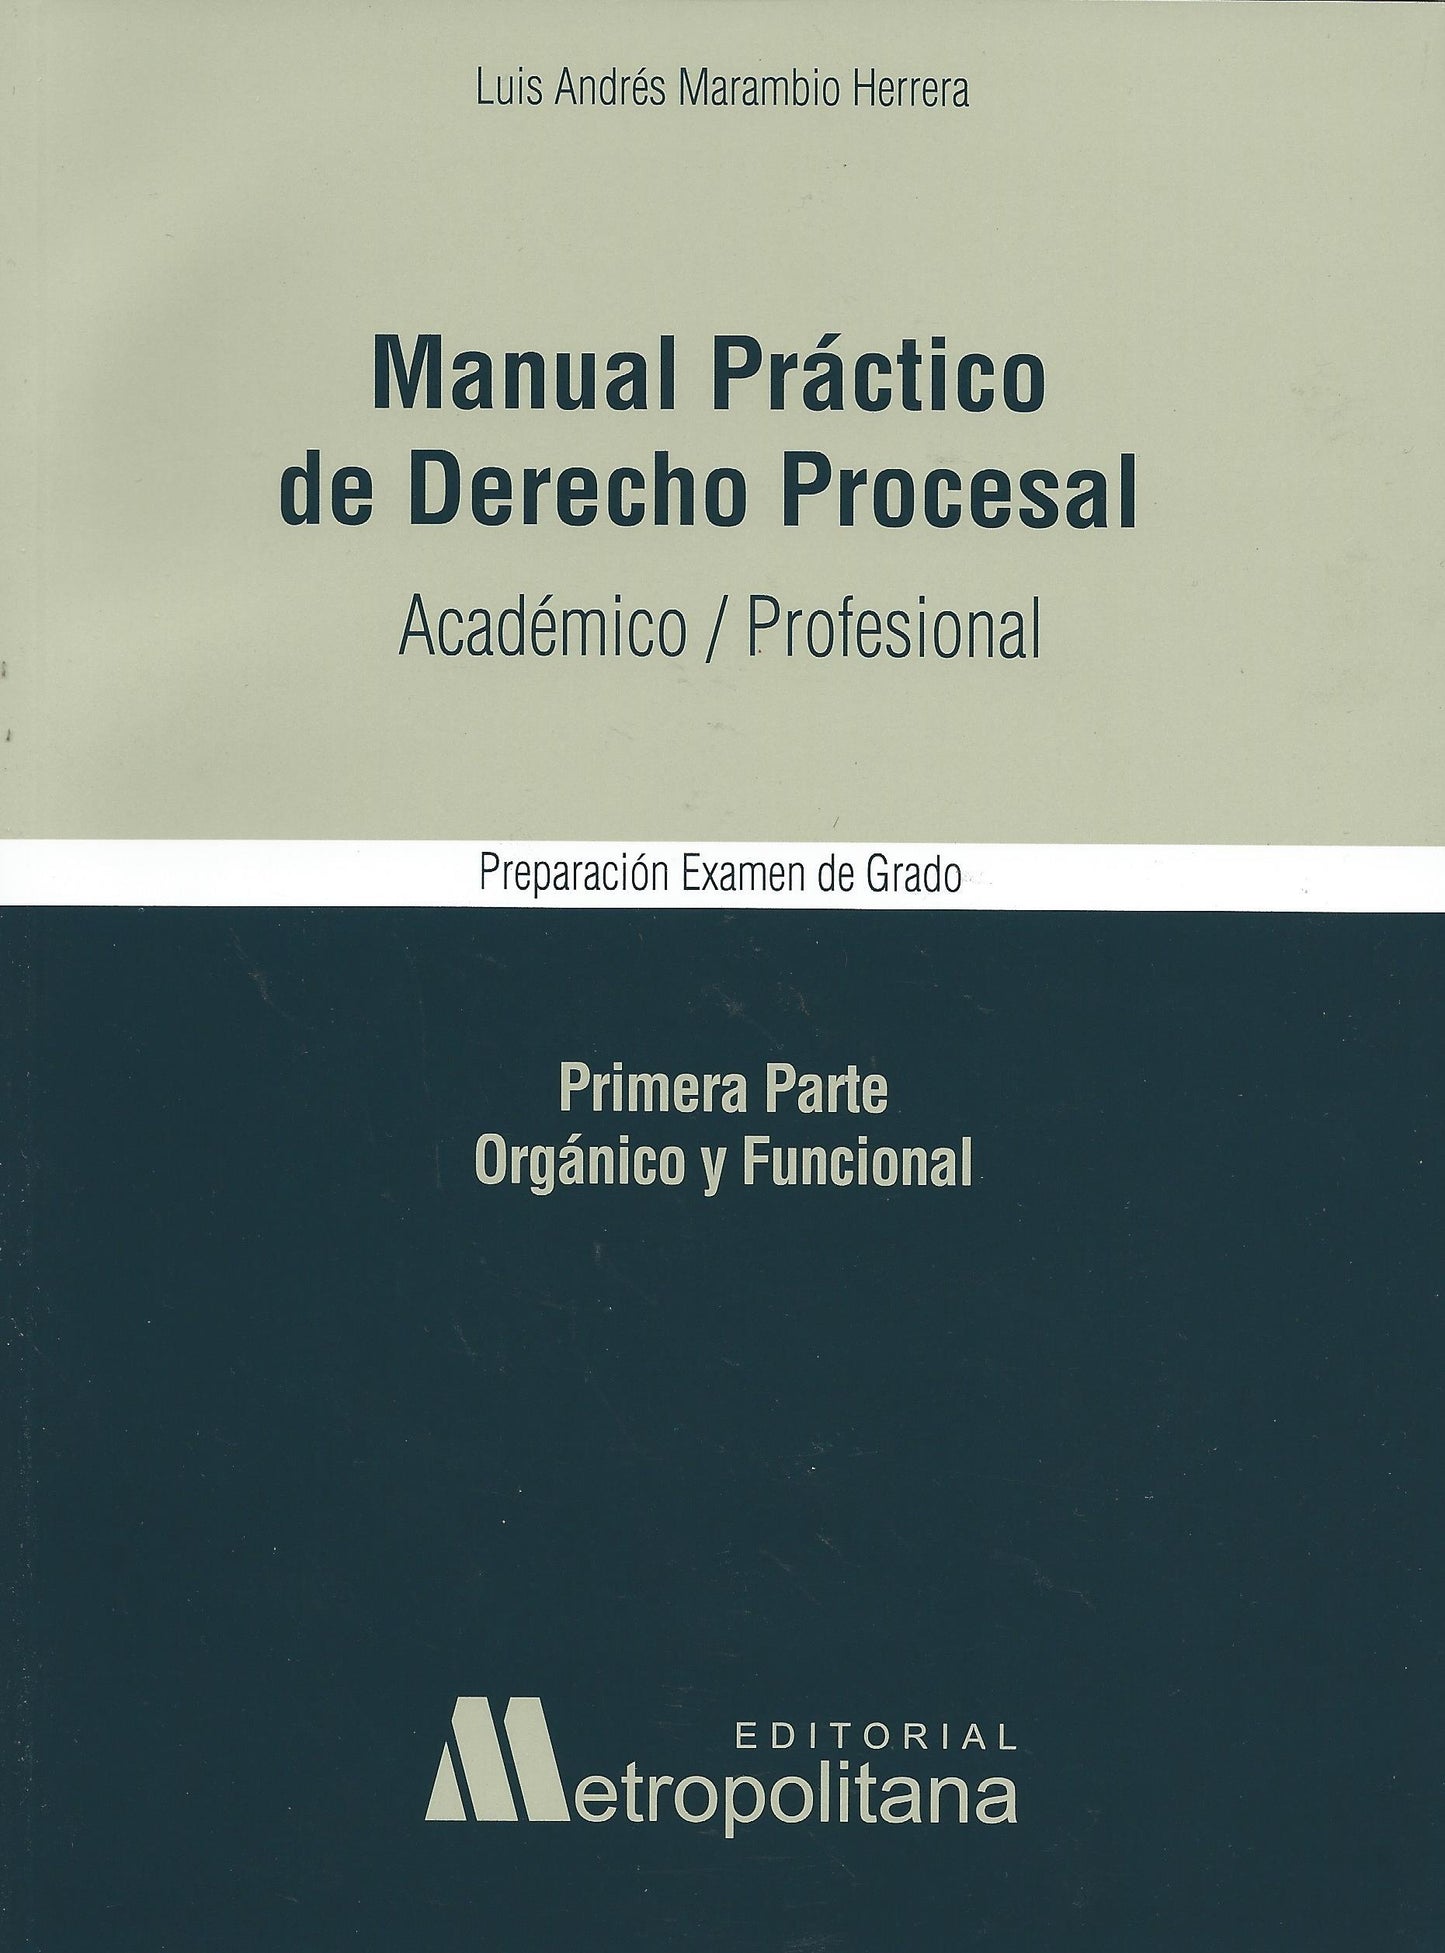 Manual Práctico de Derecho Procesal. Académico/Profesional.